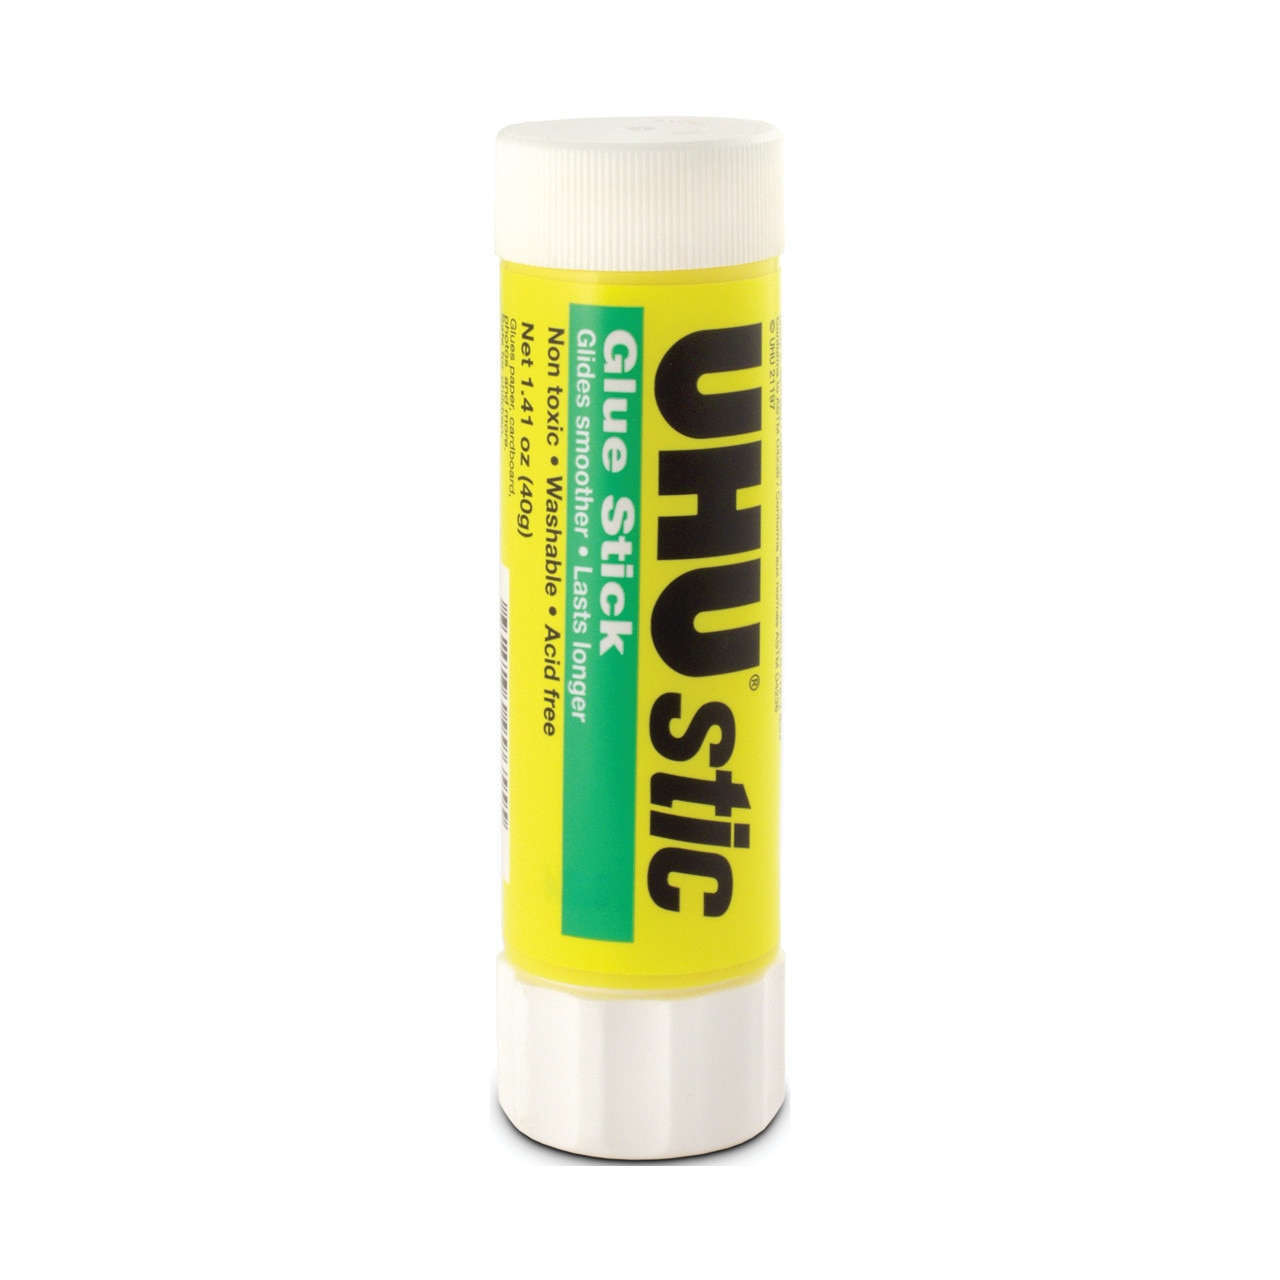 Uhu Stic Glue Stick, Clear, 1.41 oz.